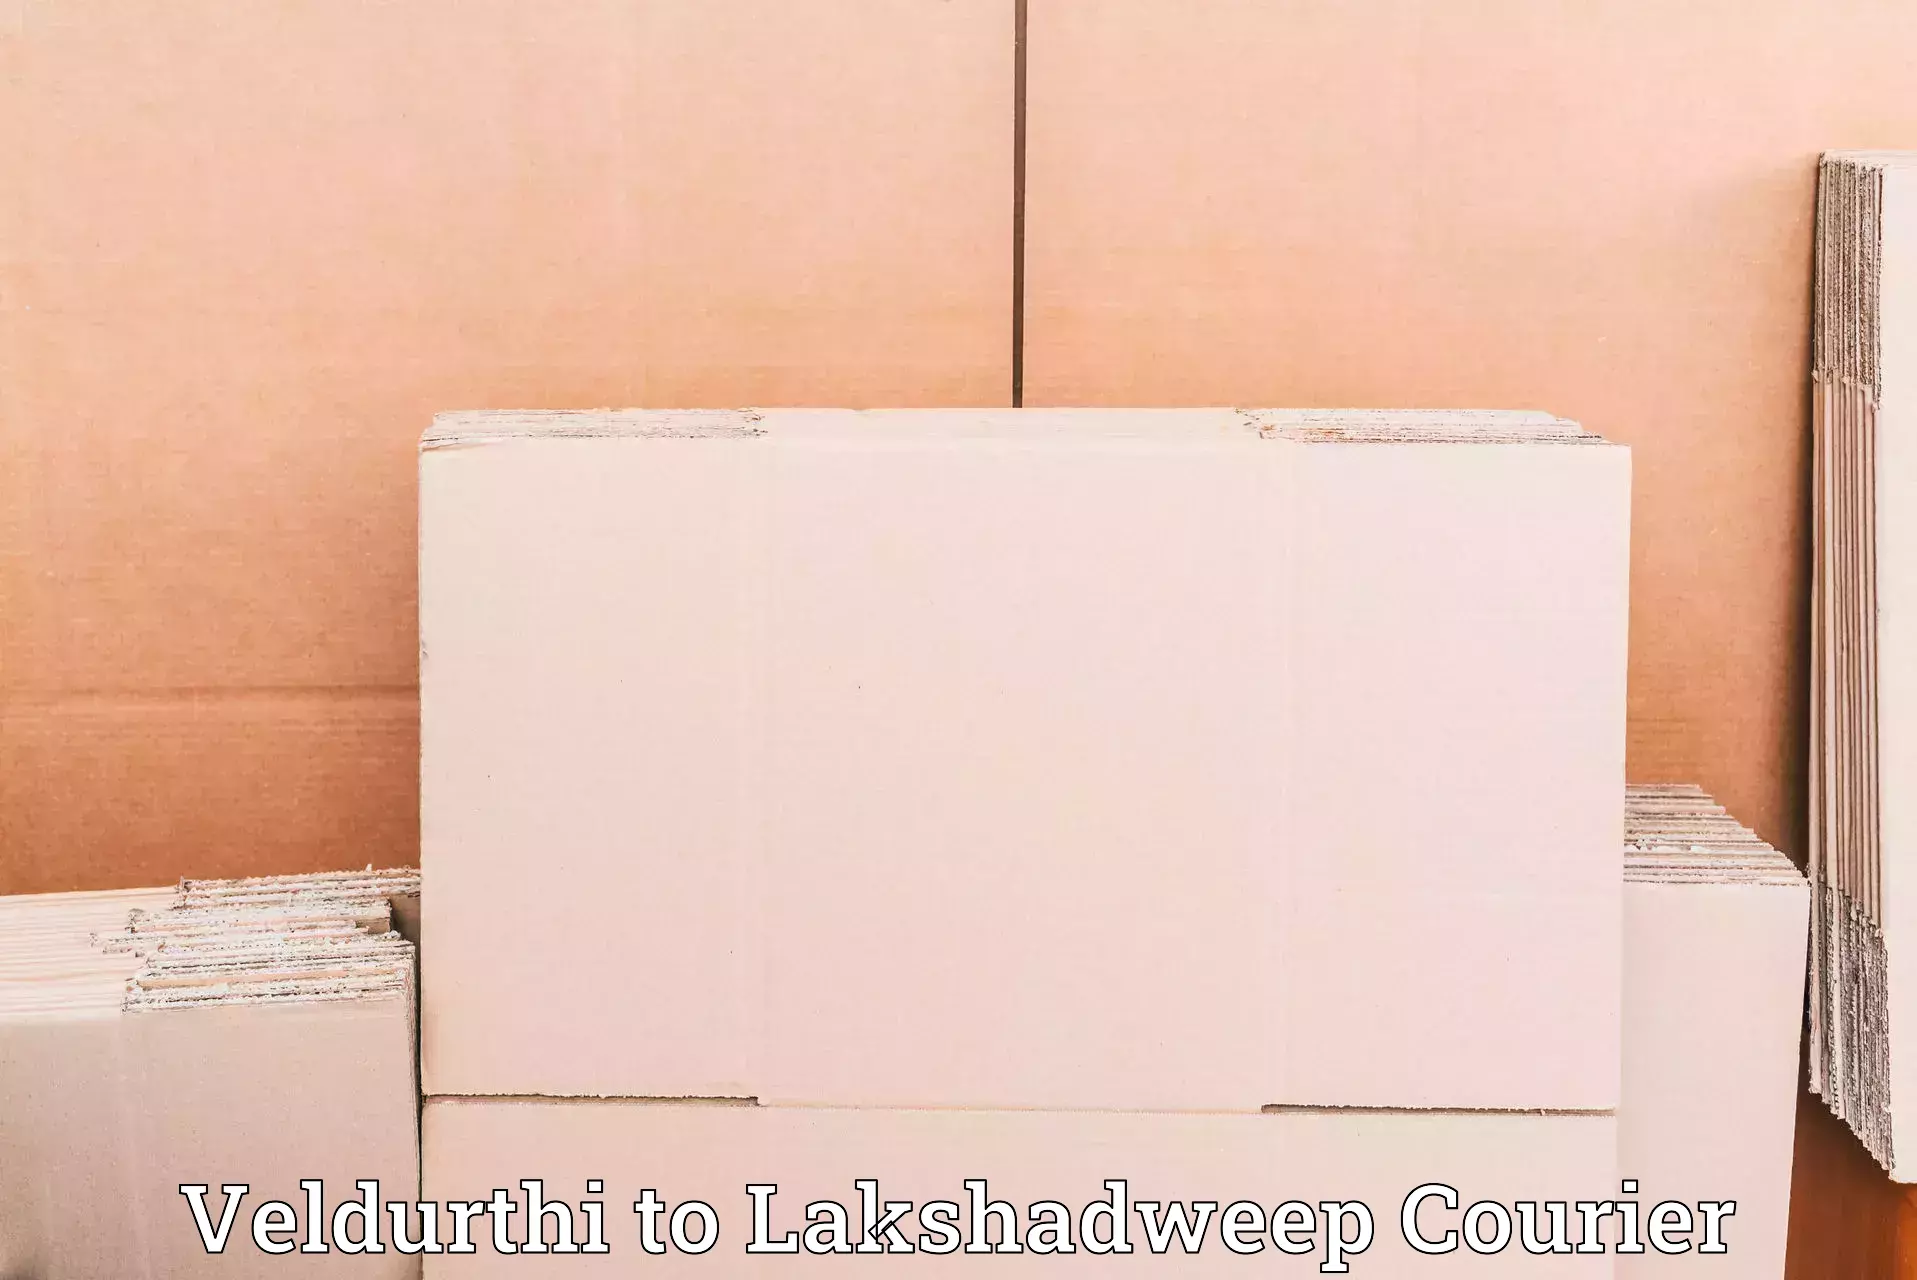 Efficient shipping operations Veldurthi to Lakshadweep